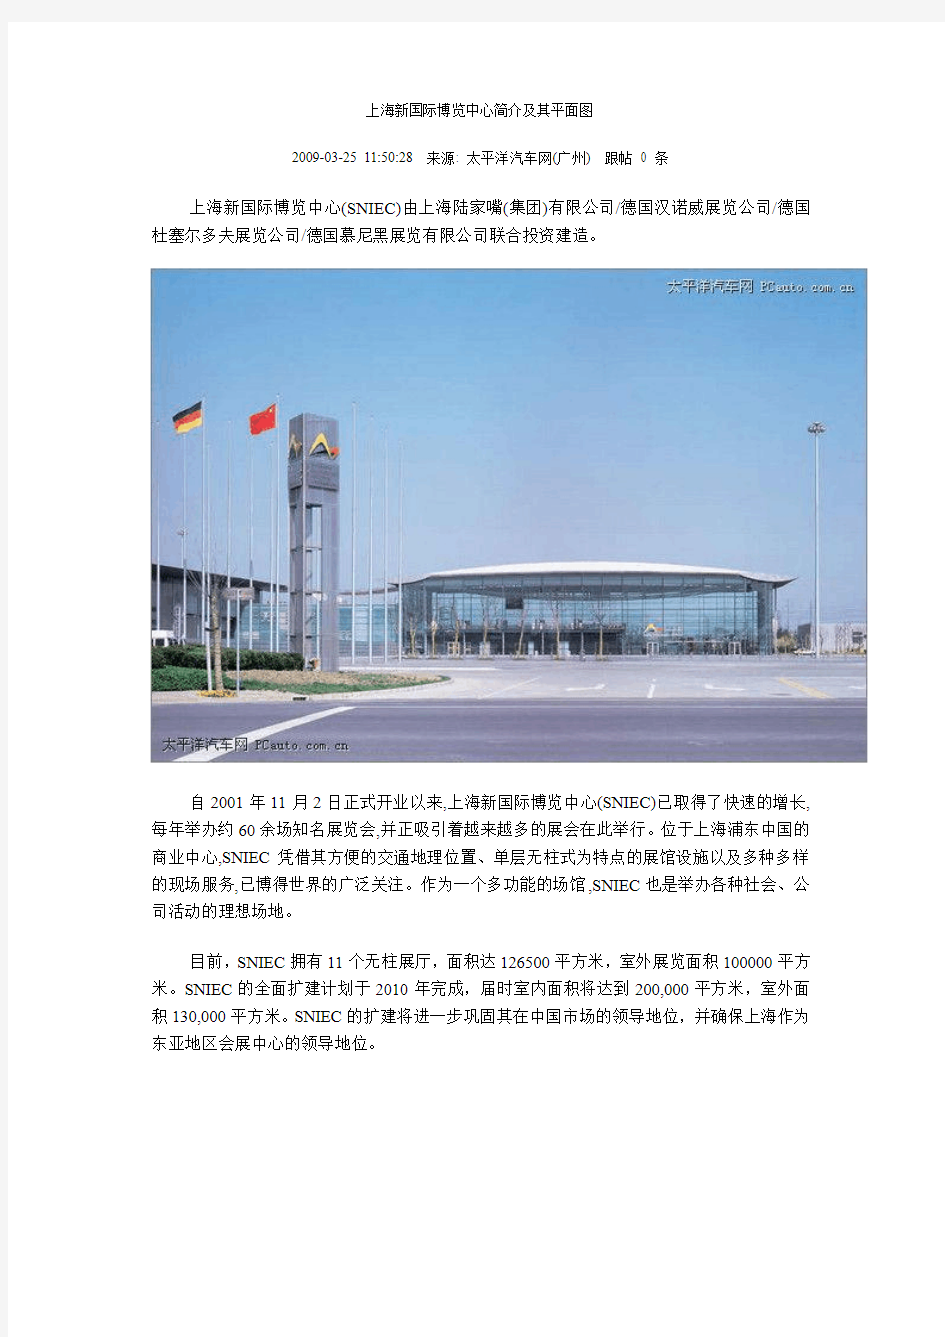 上海新国际博览中心简介及其平面图